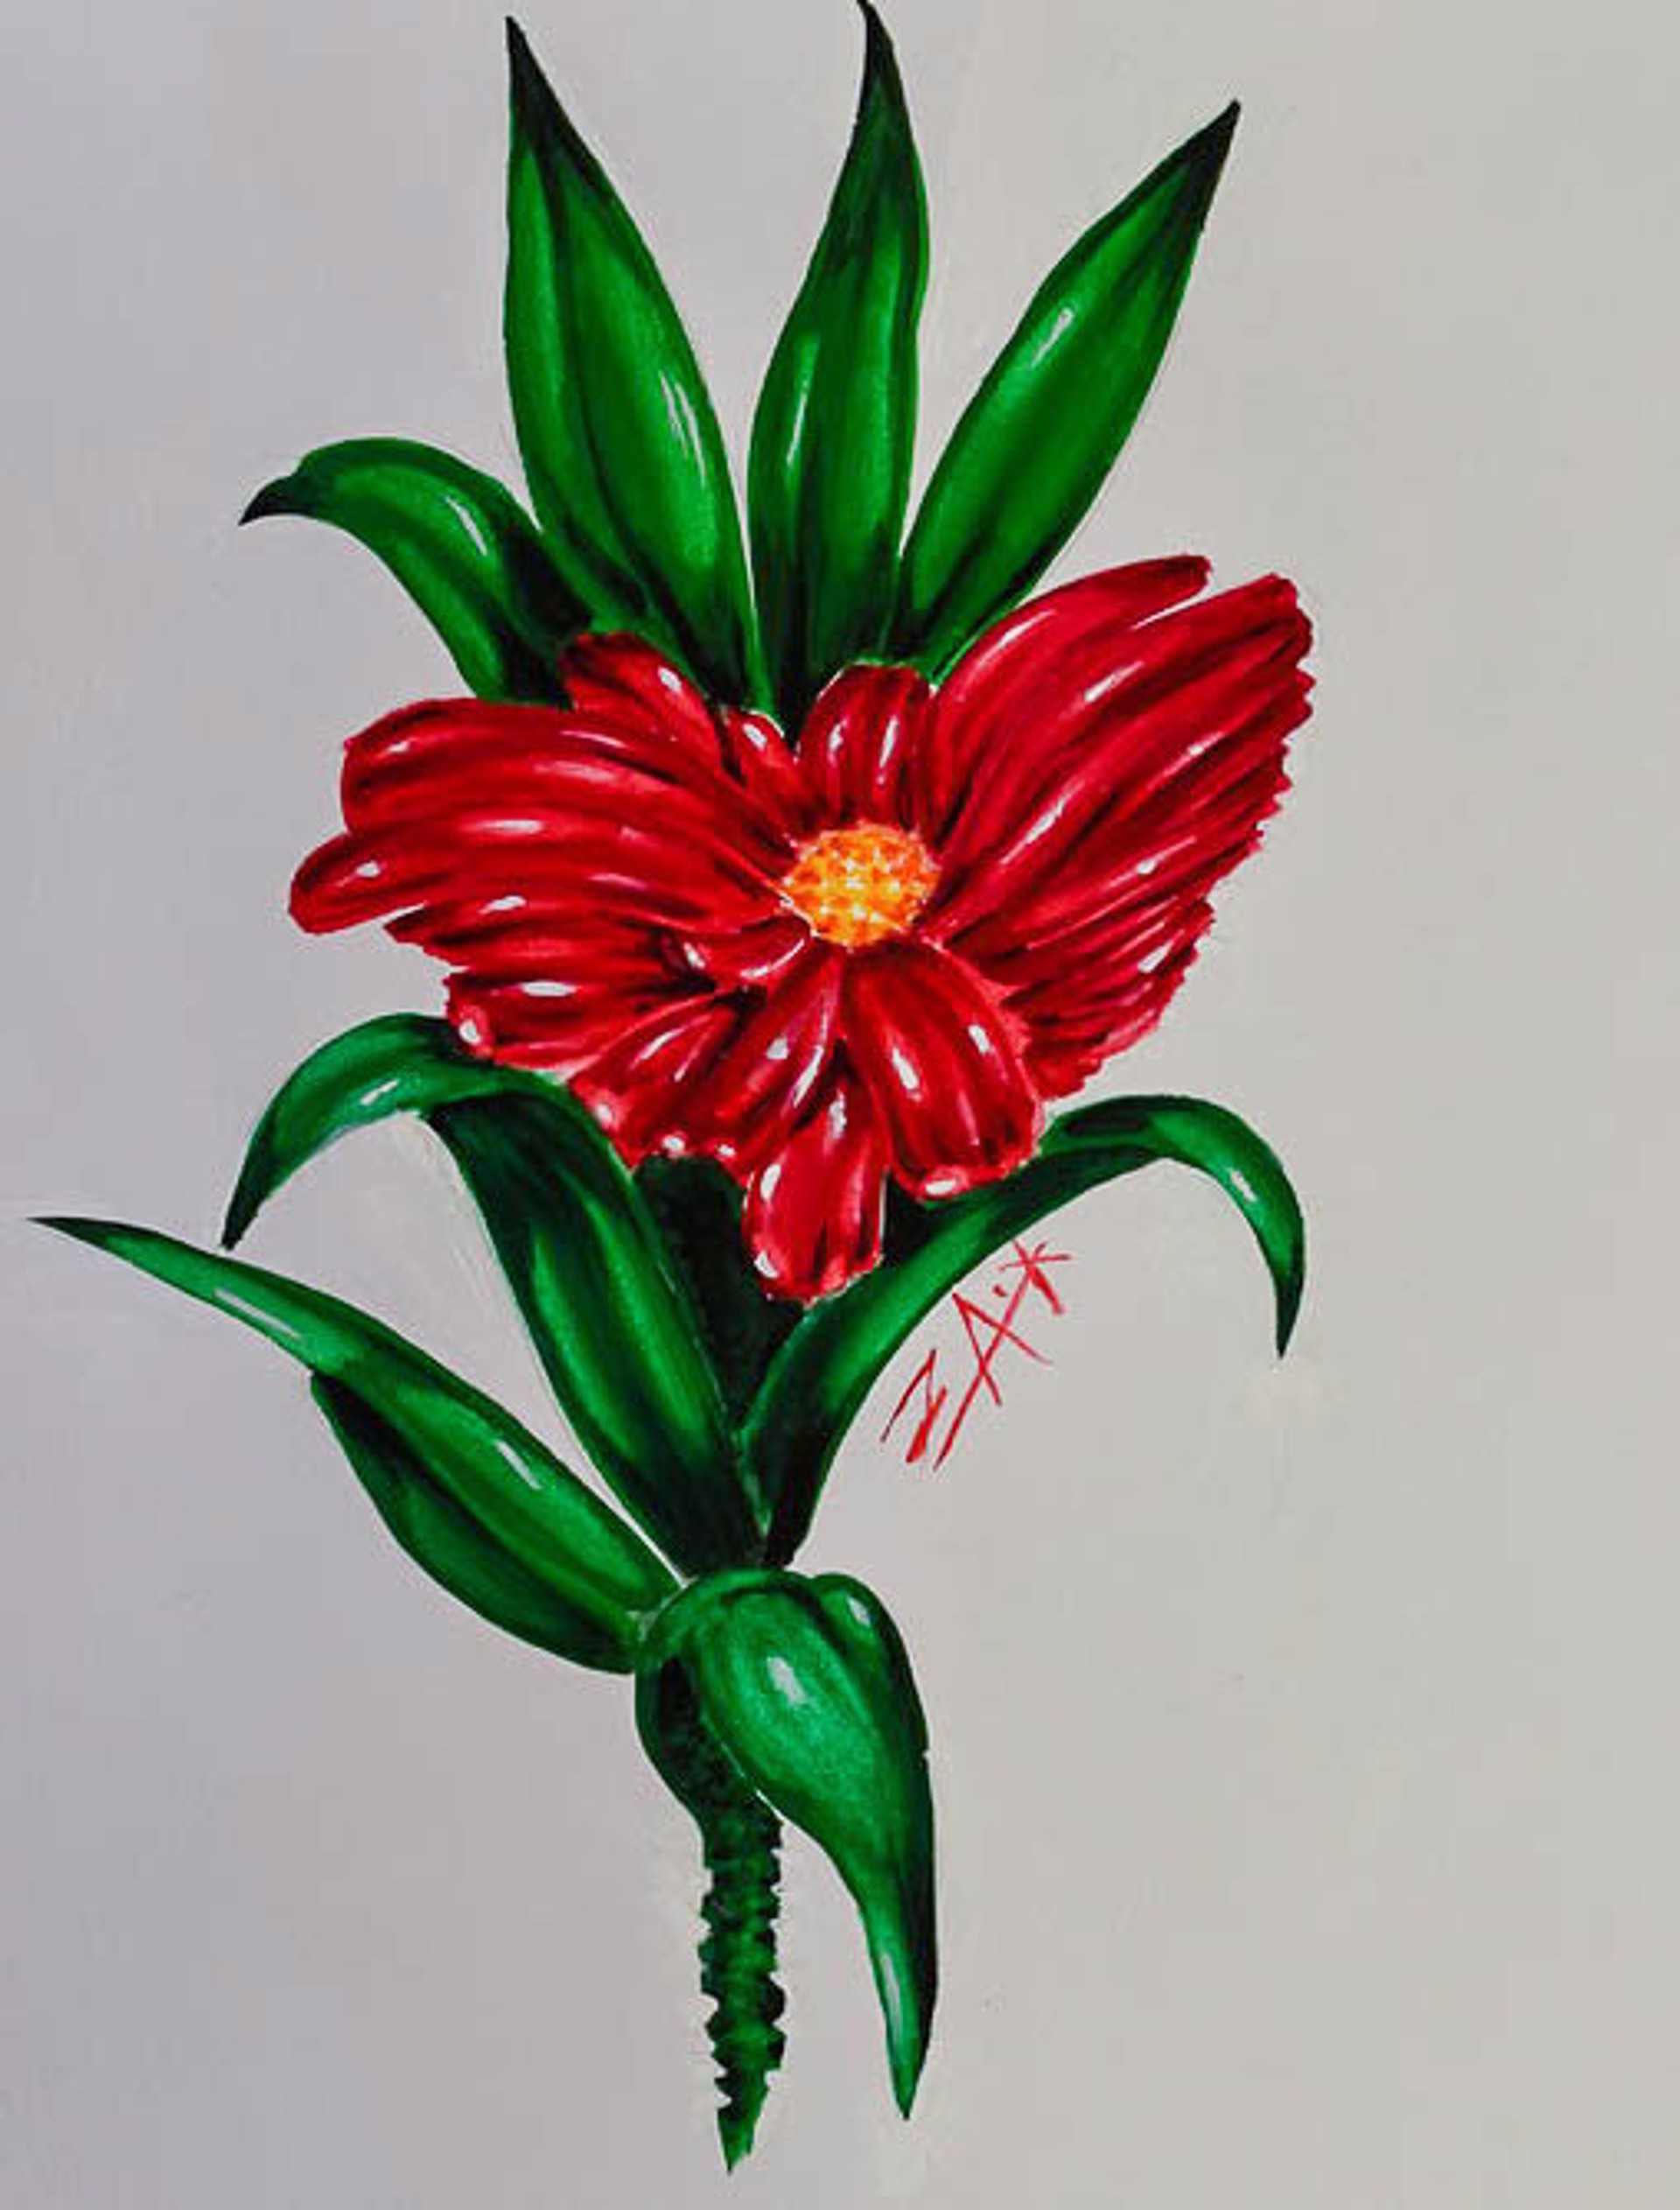 Delightful Dendrobium by Zach Arvieux